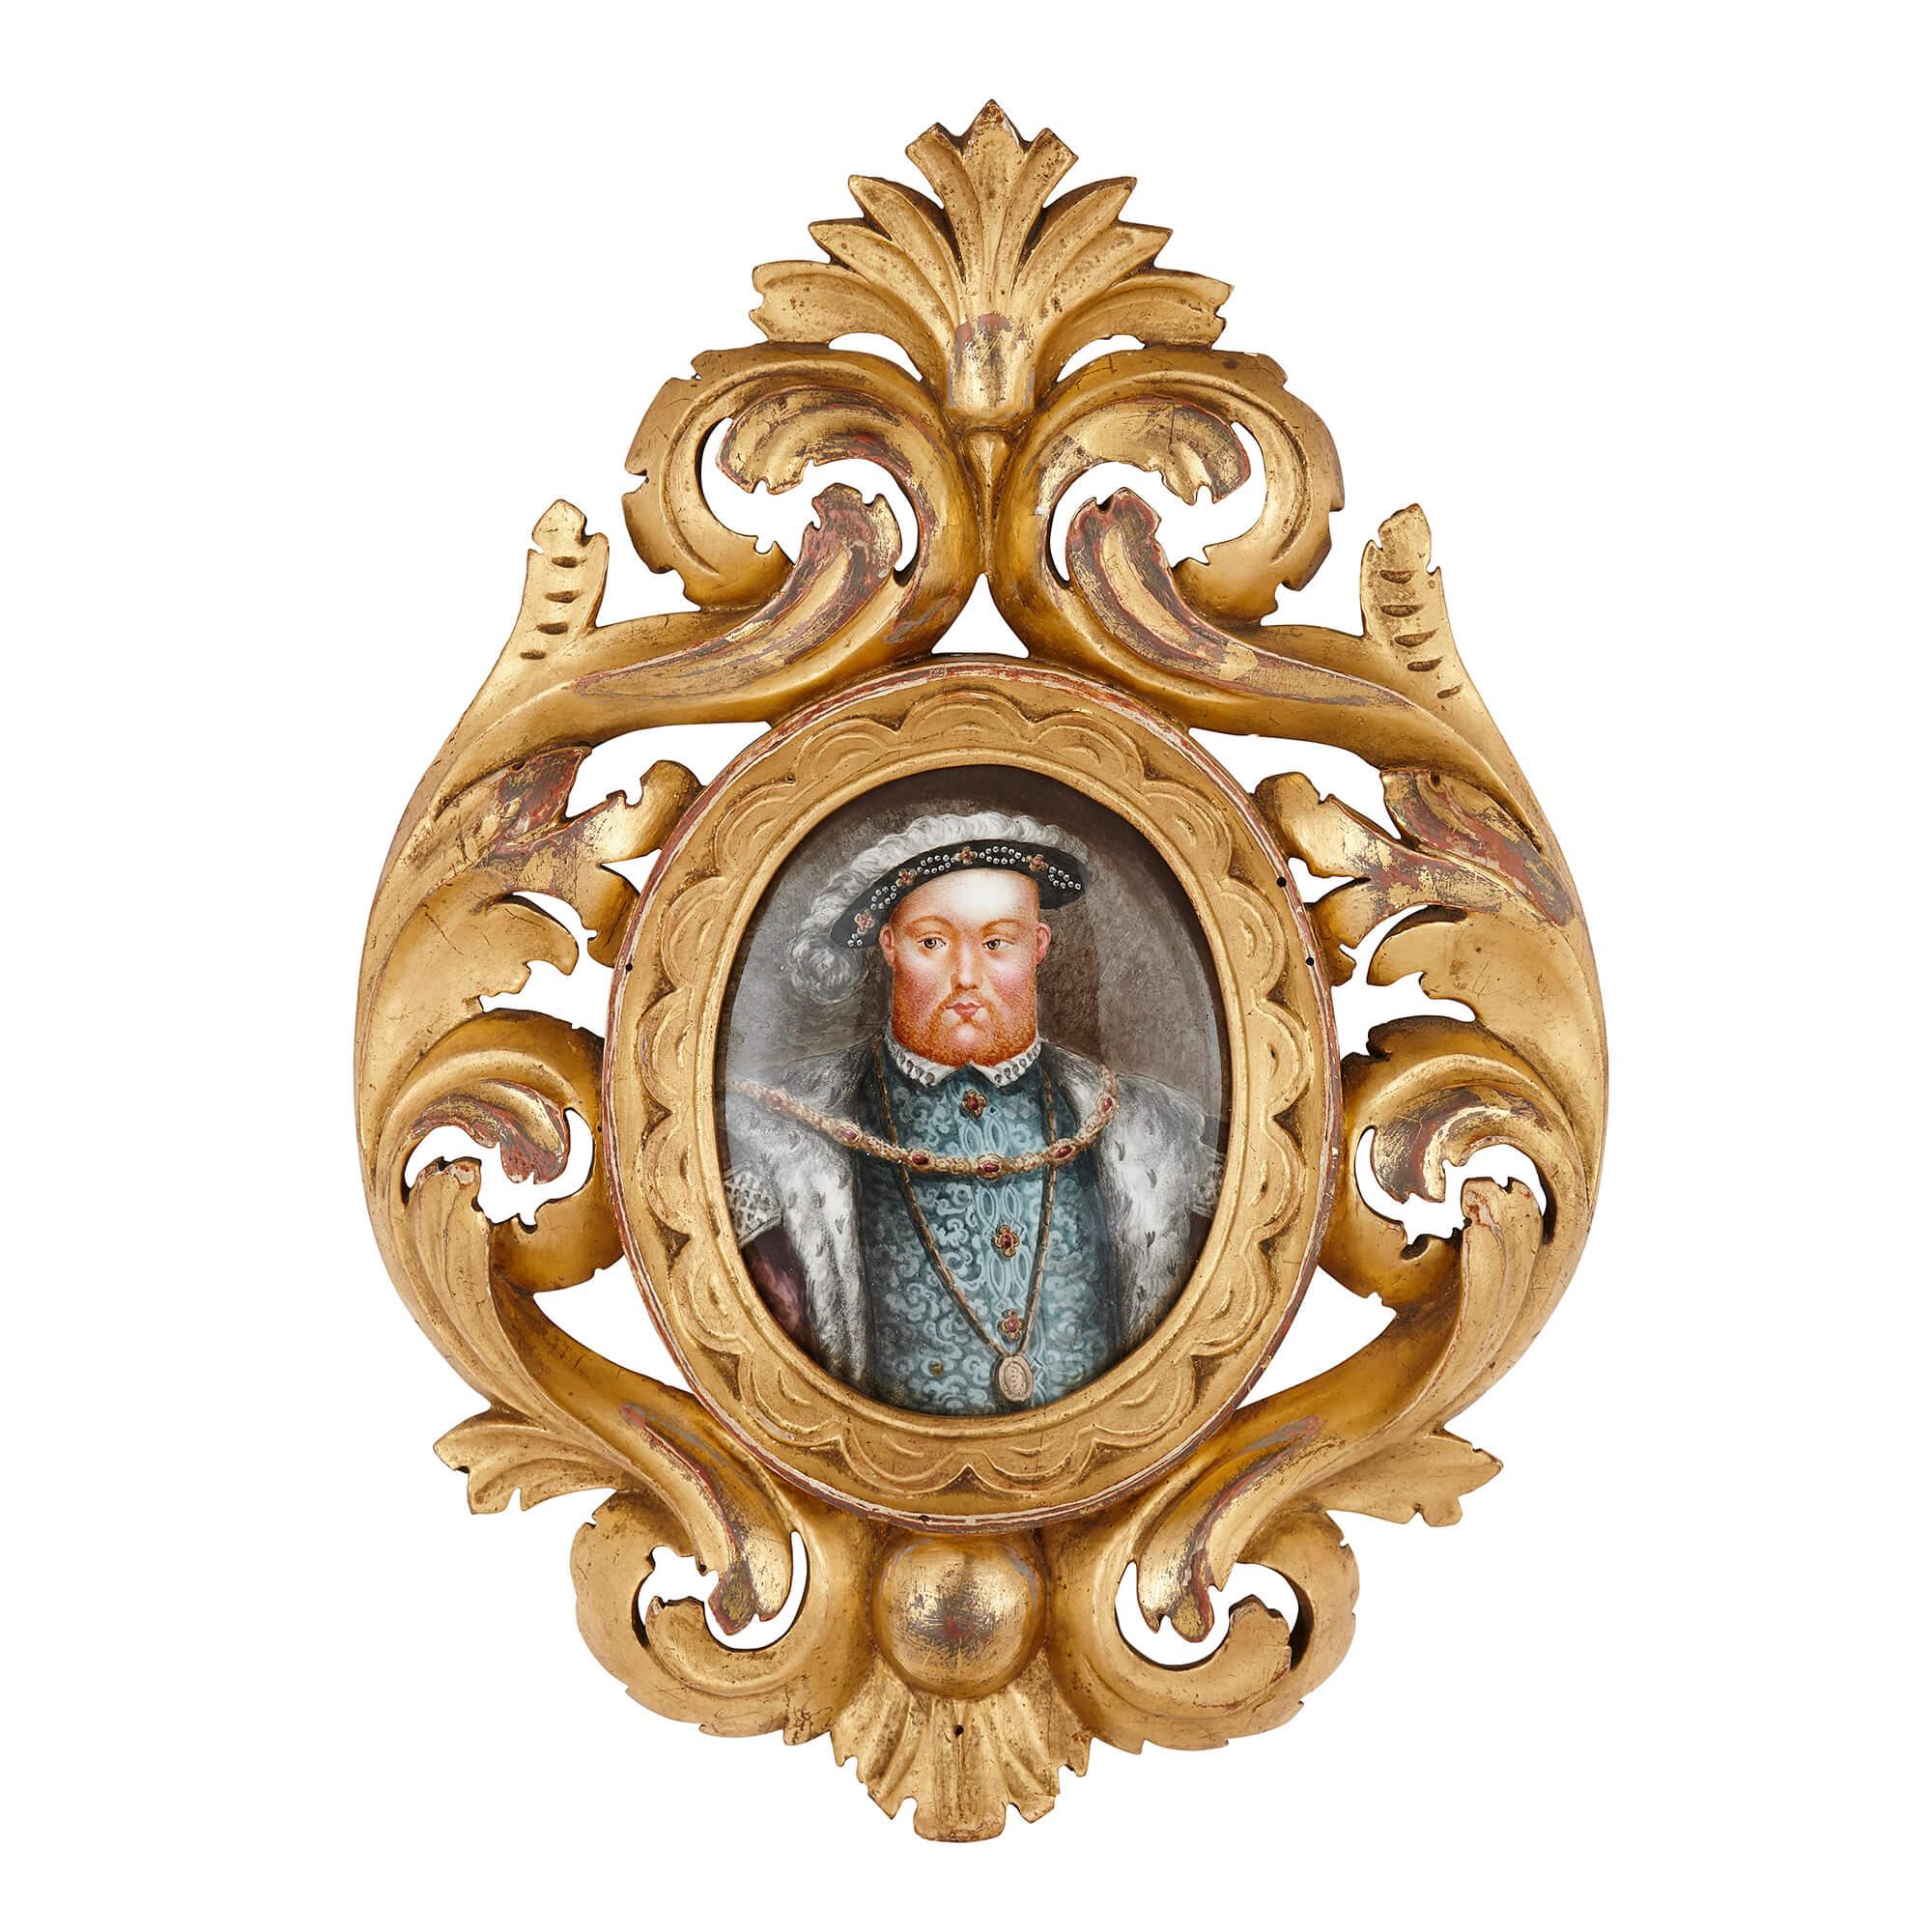 Diese exquisiten Porträtplaketten wurden in der französischen Stadt Limoges hergestellt, die für die hohe Qualität ihrer Emailleprodukte bekannt ist. Die Tafeln sind mit ovalen, halblangen Porträts der britischen Tudor-Monarchen bemalt, die in